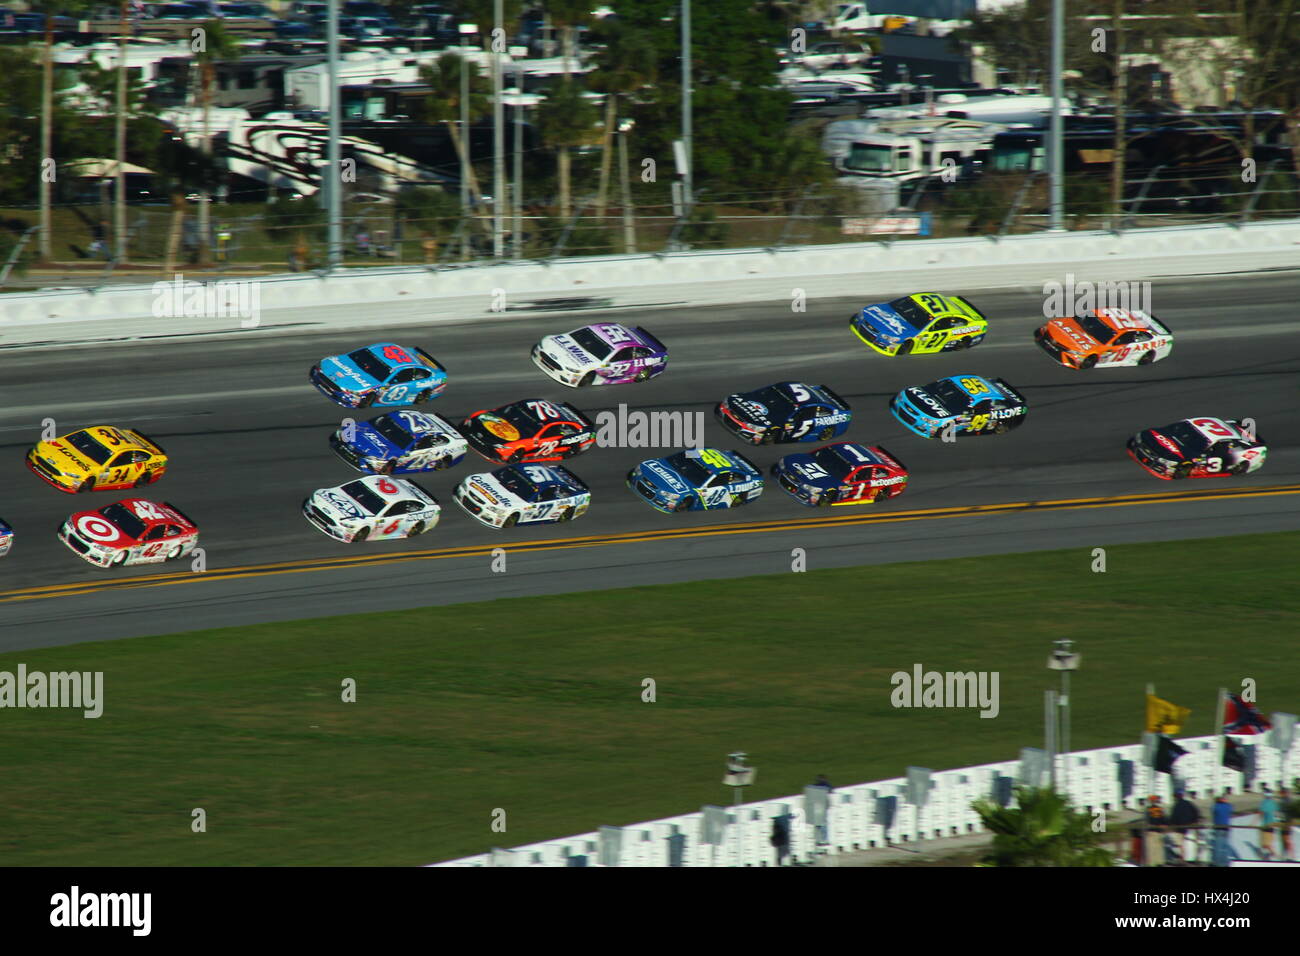 NASCAR-Rennwagen drei Breite am Daytona International Speedway schalten 4 während der 2017 Daytona 500. Stockfoto